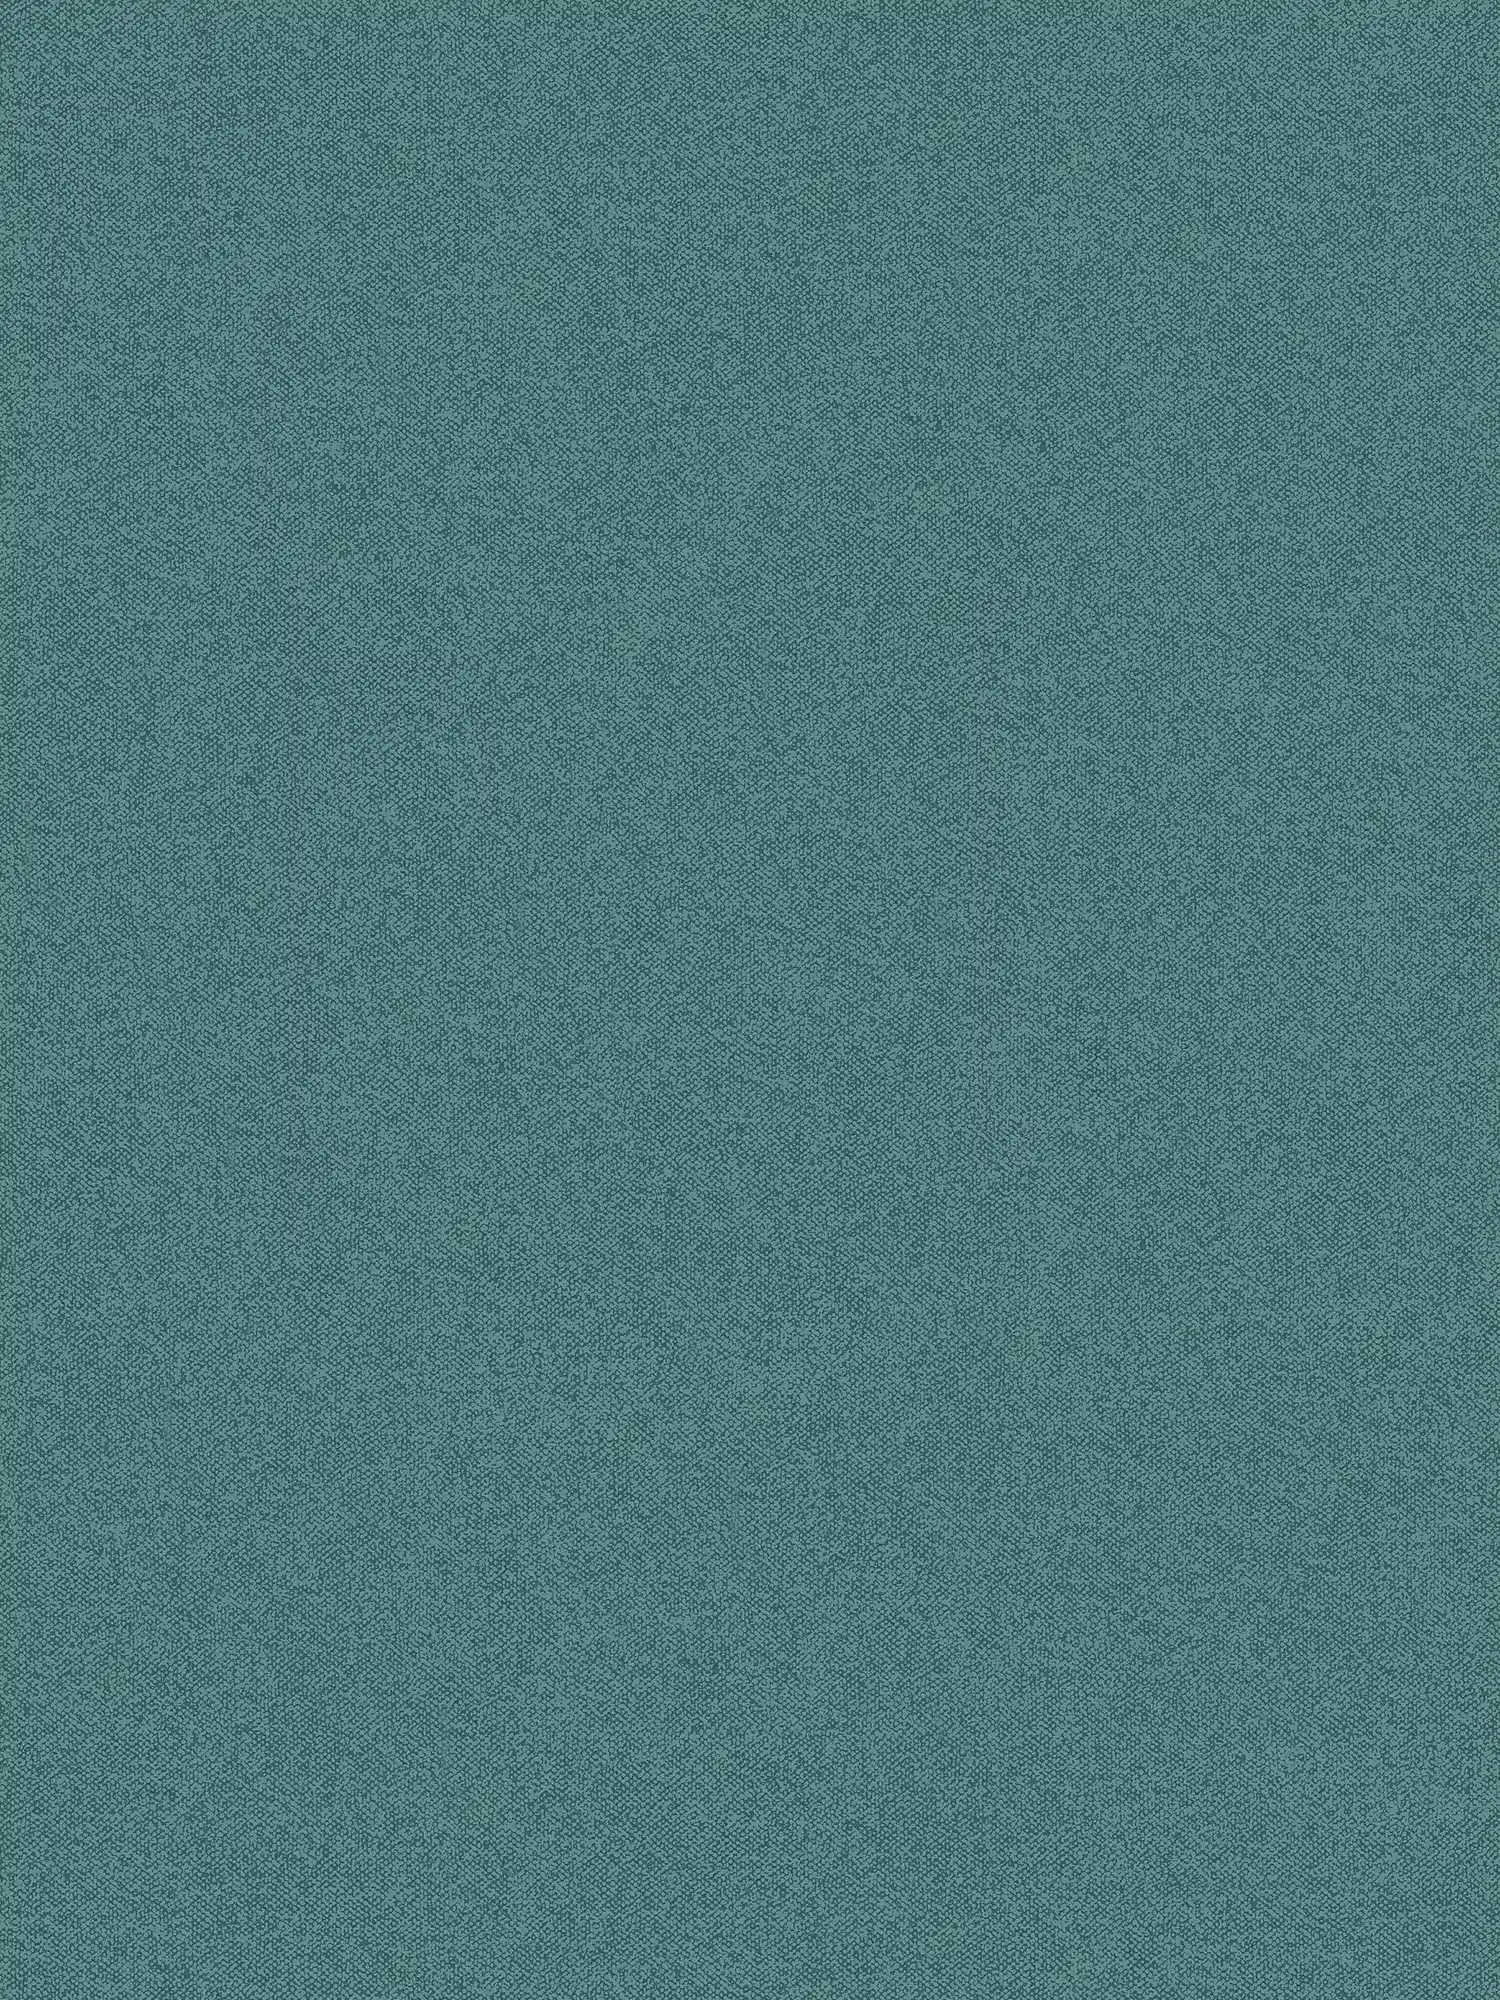 Papier peint uni aspect lin, structuré - vert, bleu
